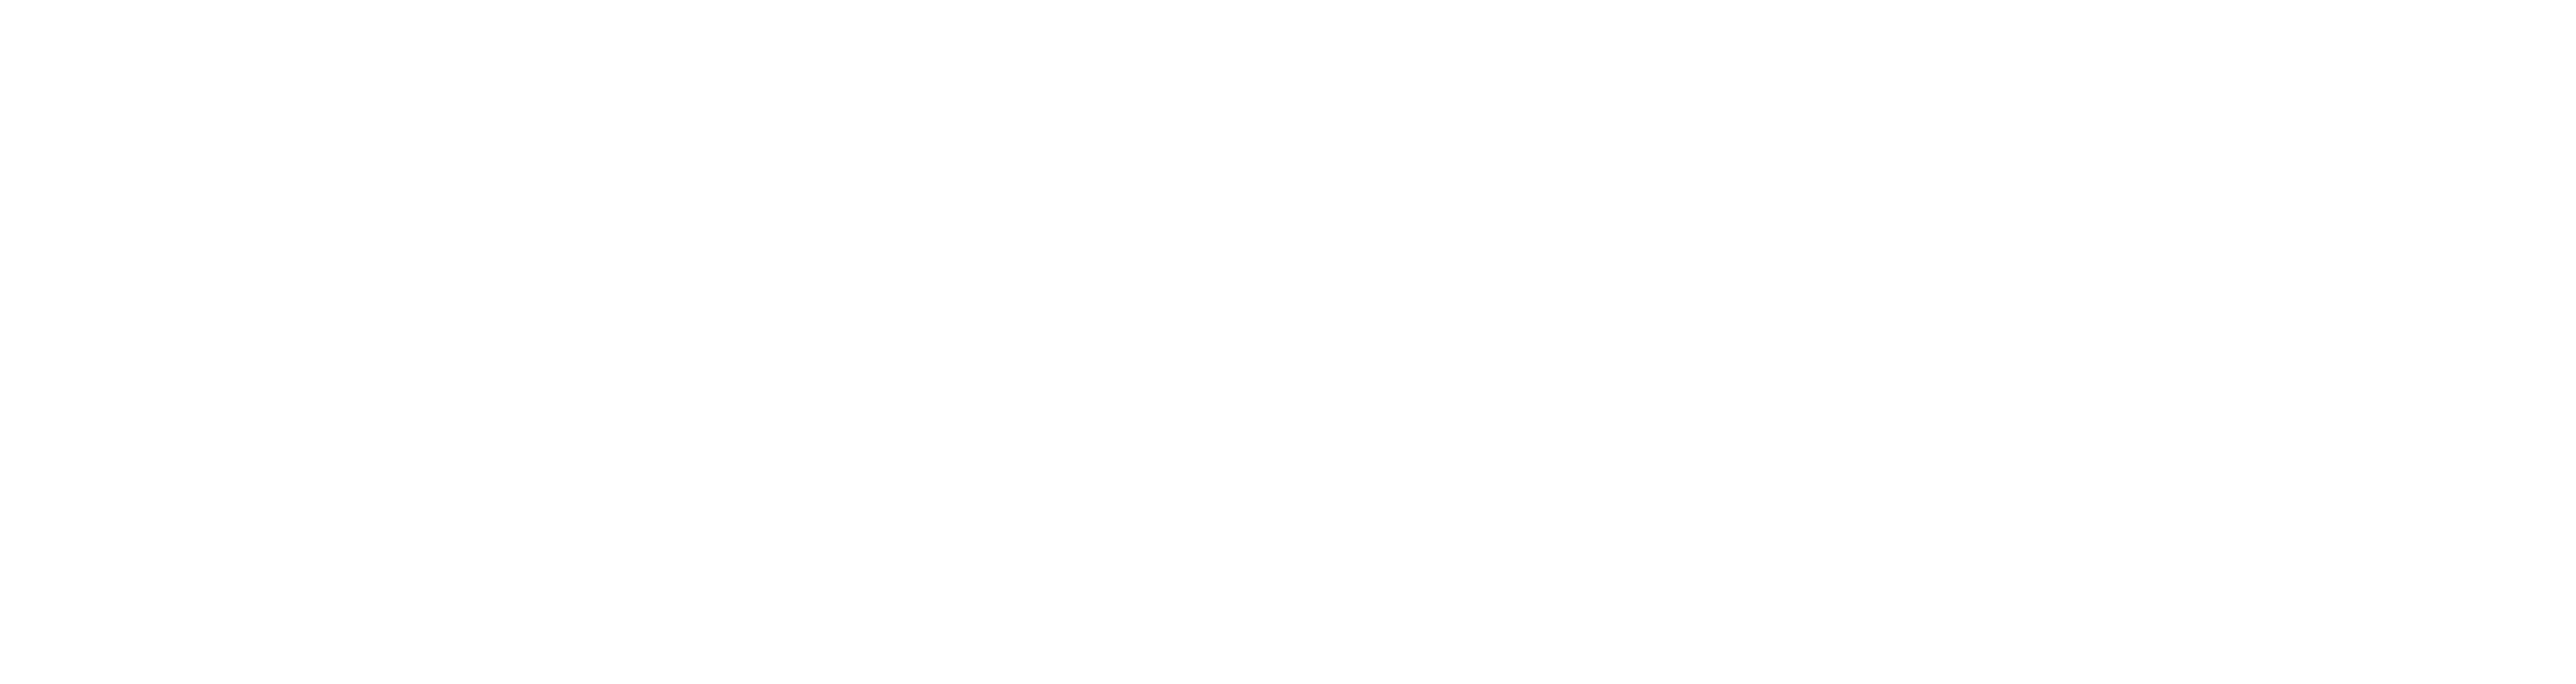 AniCura Skovlunde Dyrehospital logo